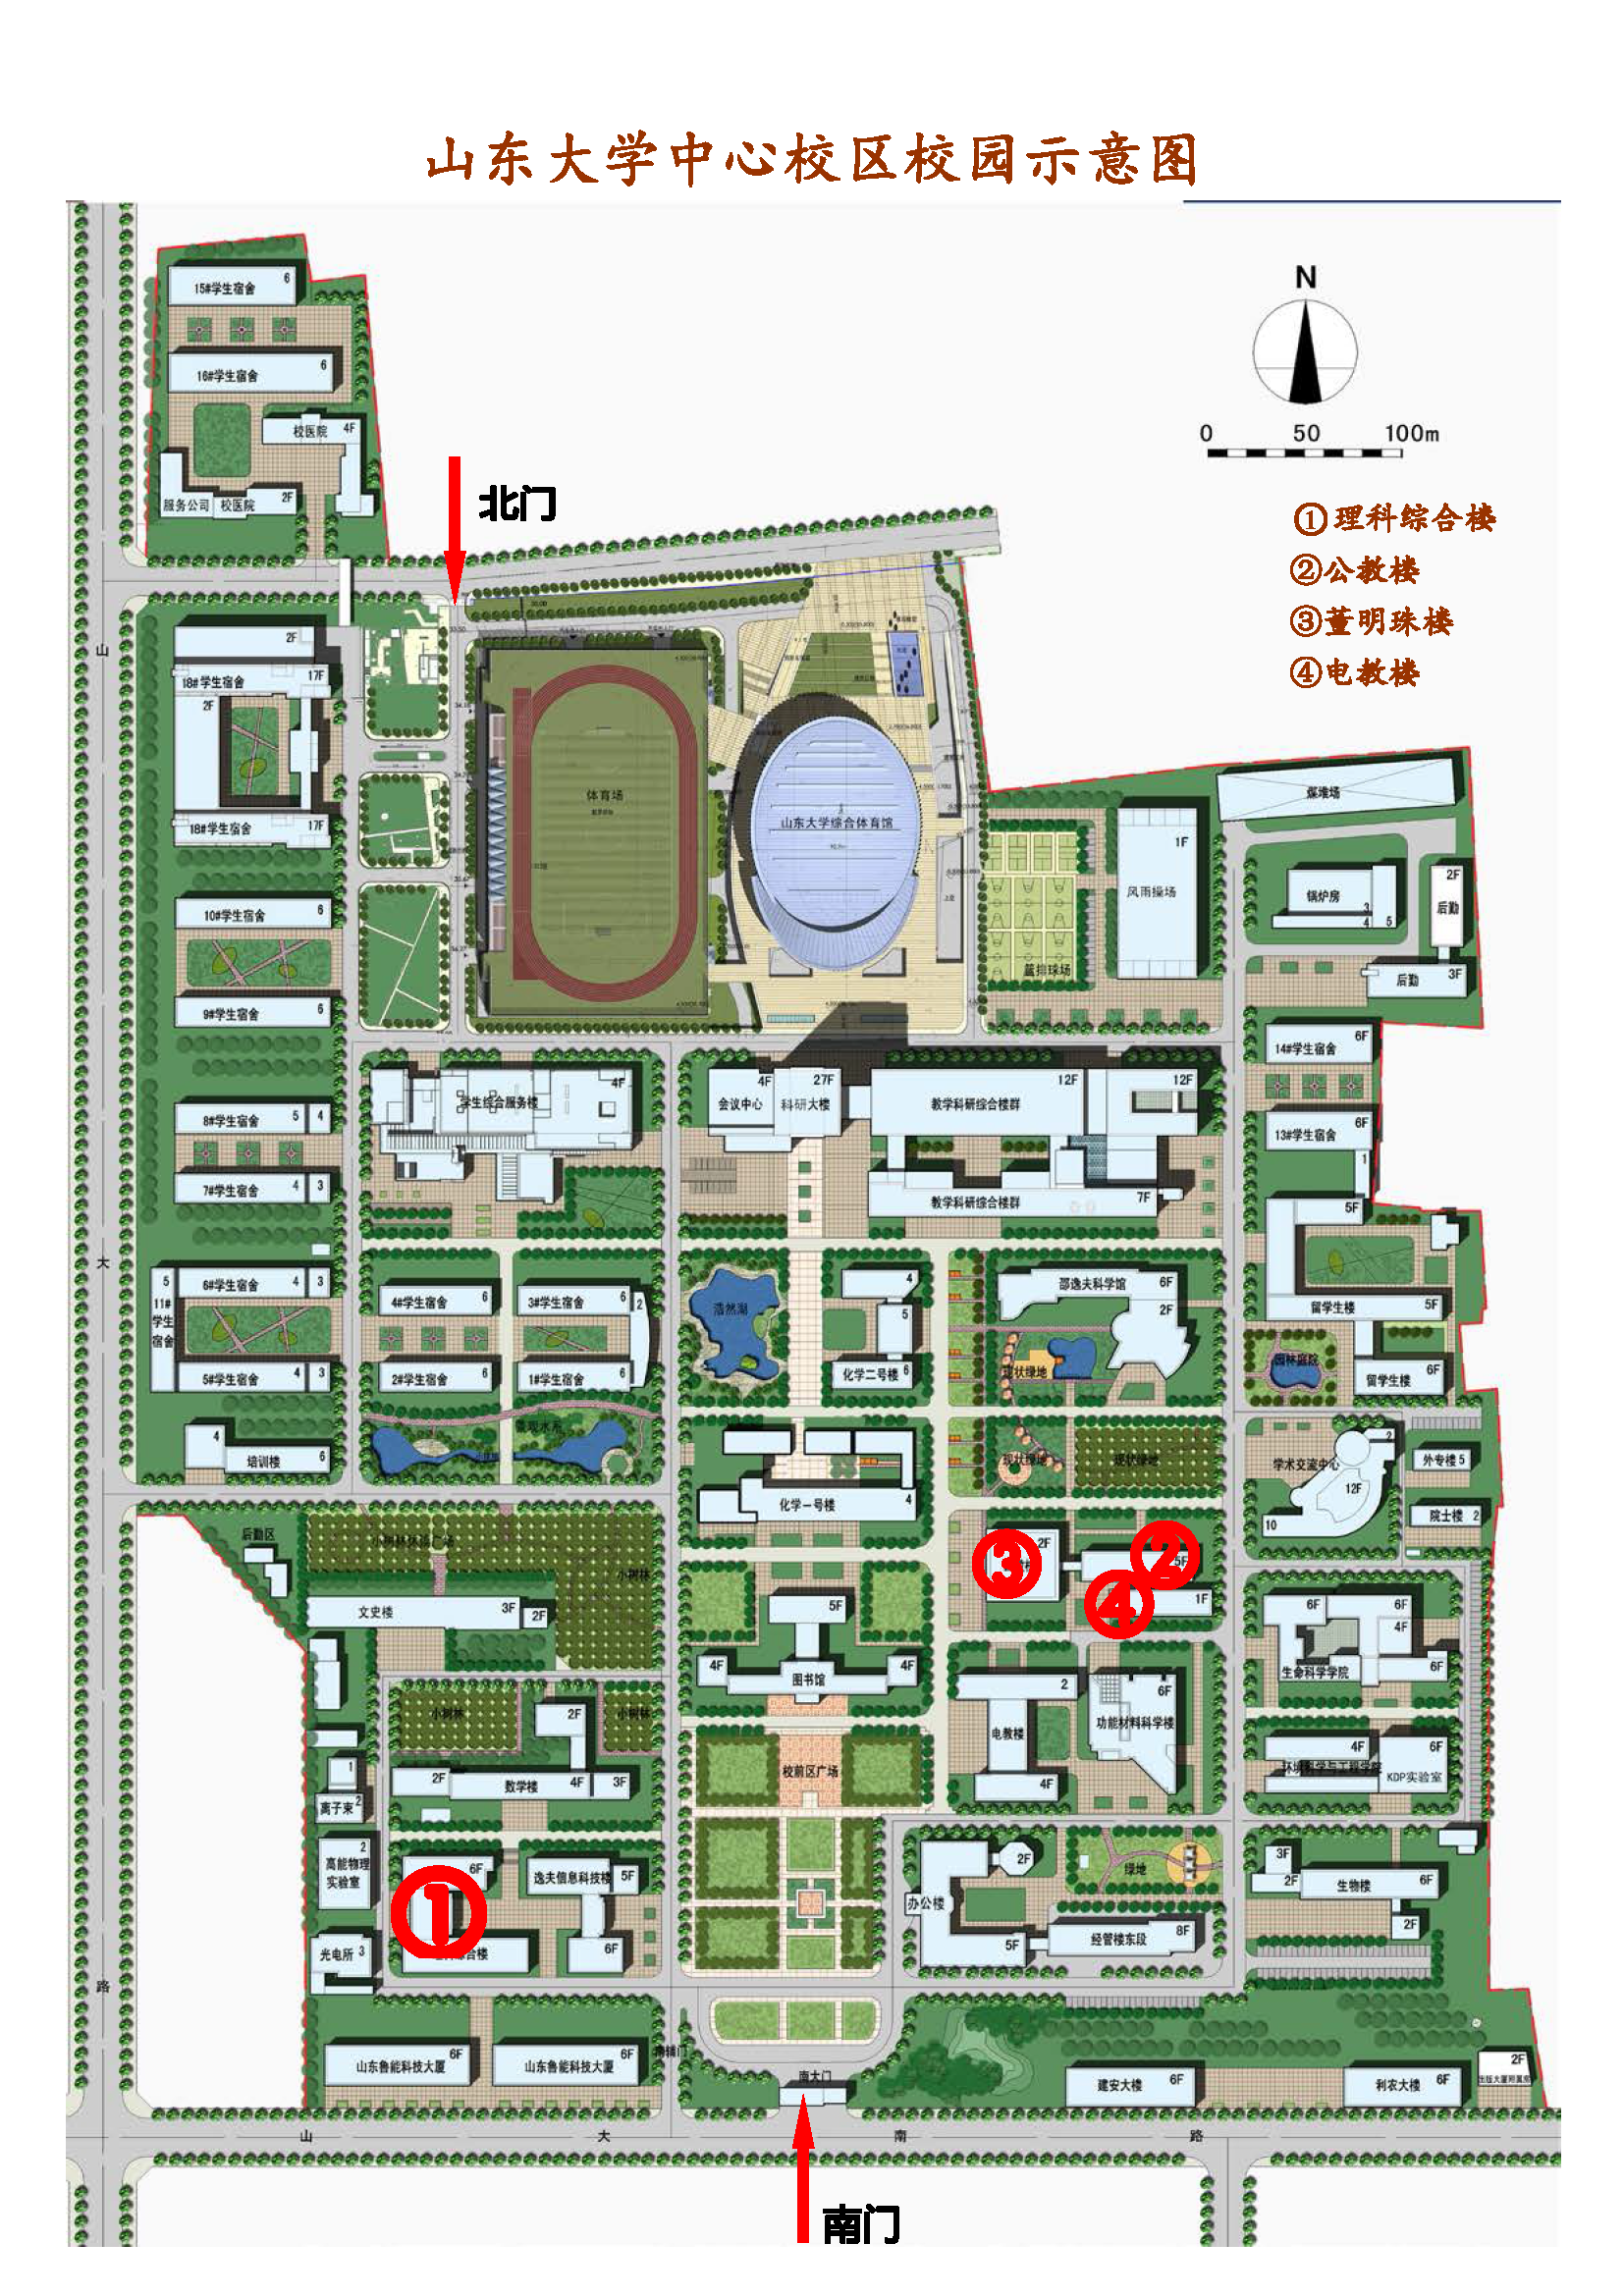 山东建筑大学全景地图图片